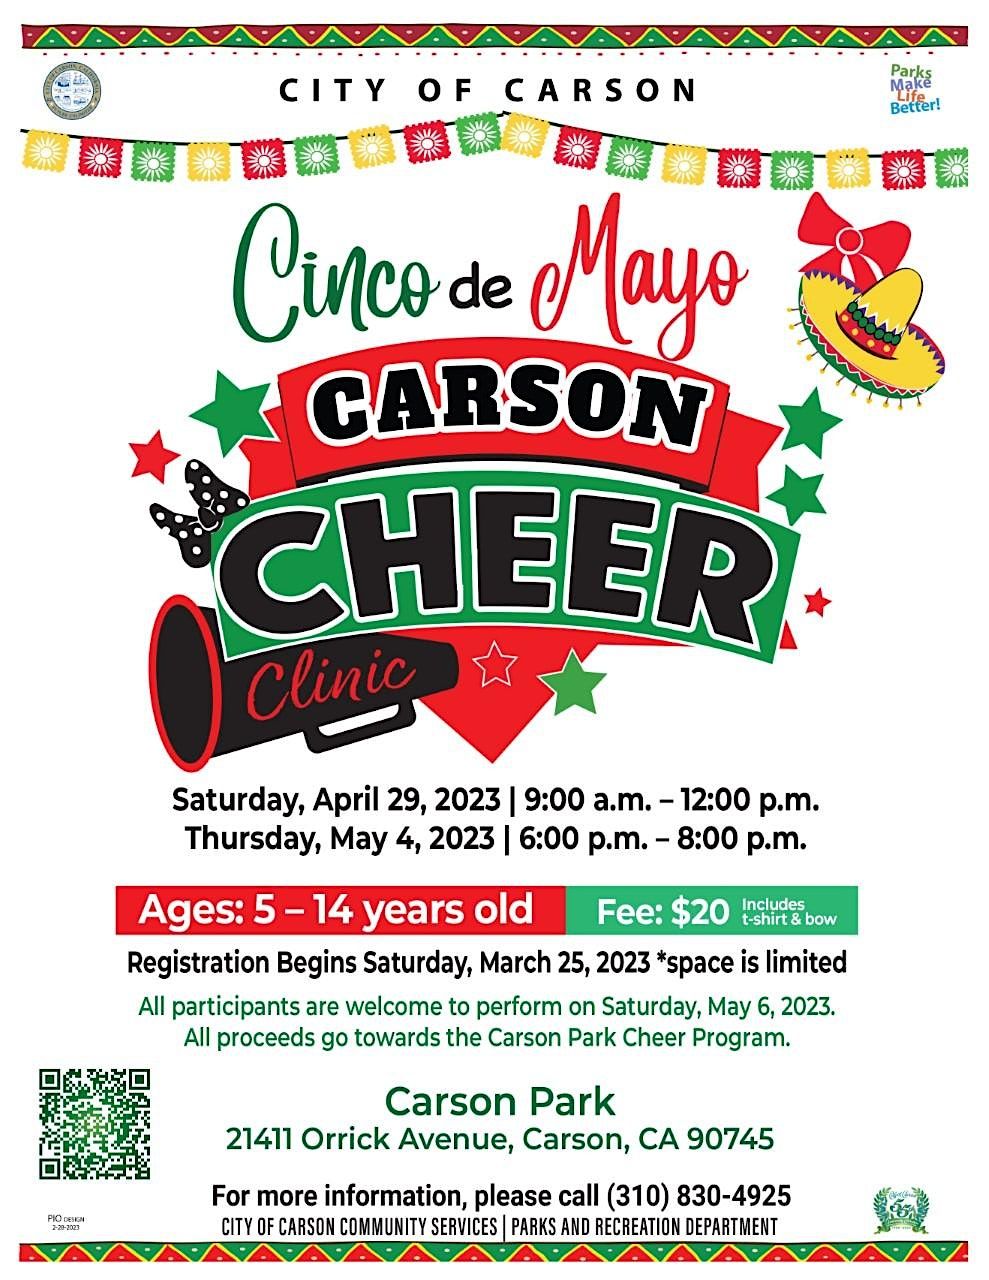 Cinco de Mayo Cheer Clinic Carson Park April 29, 2023